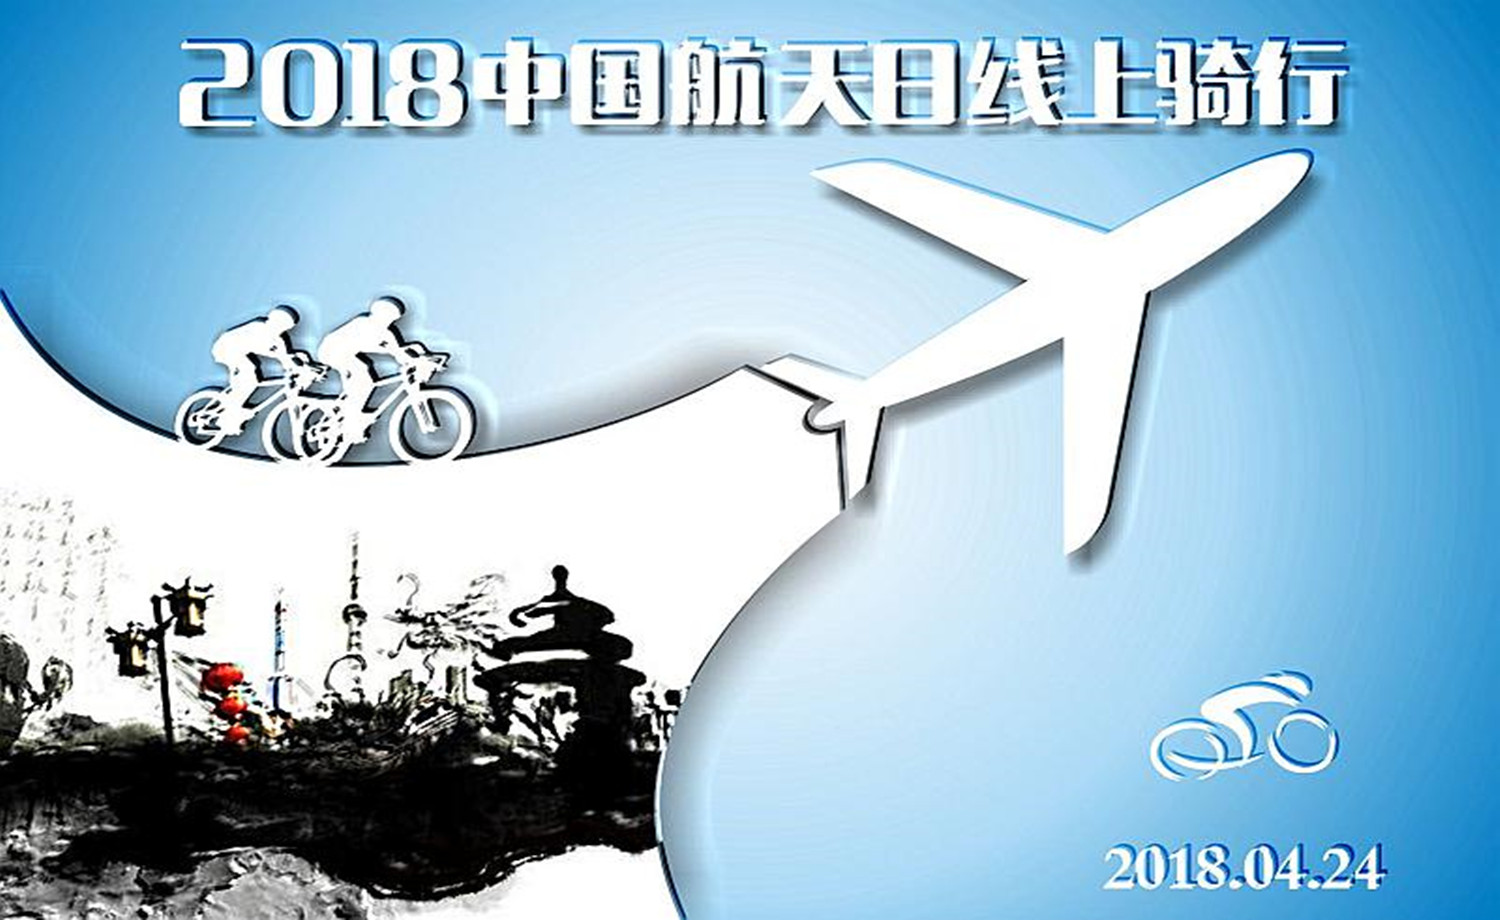 2018 中国航天日线上骑行赛